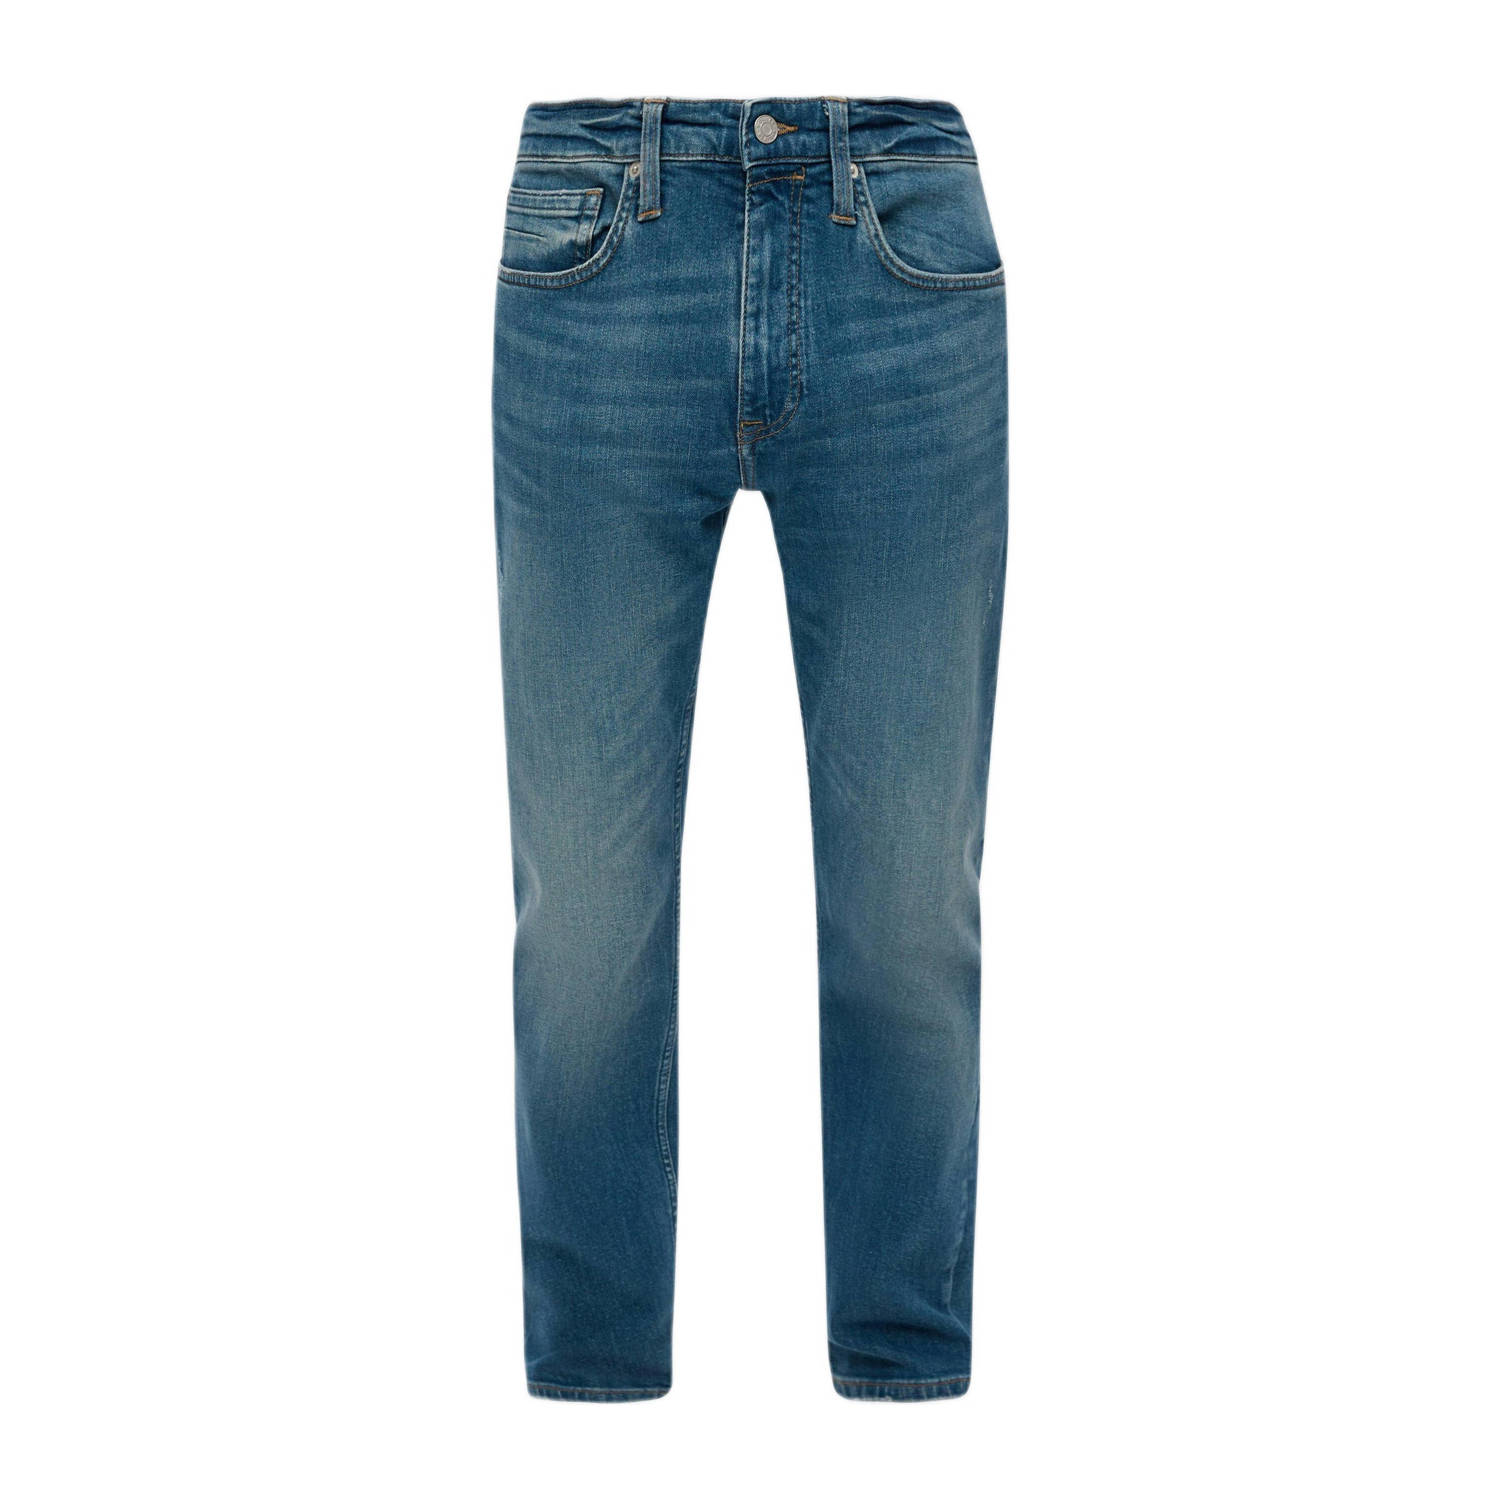 S.Oliver regular fit jeans light blue denim